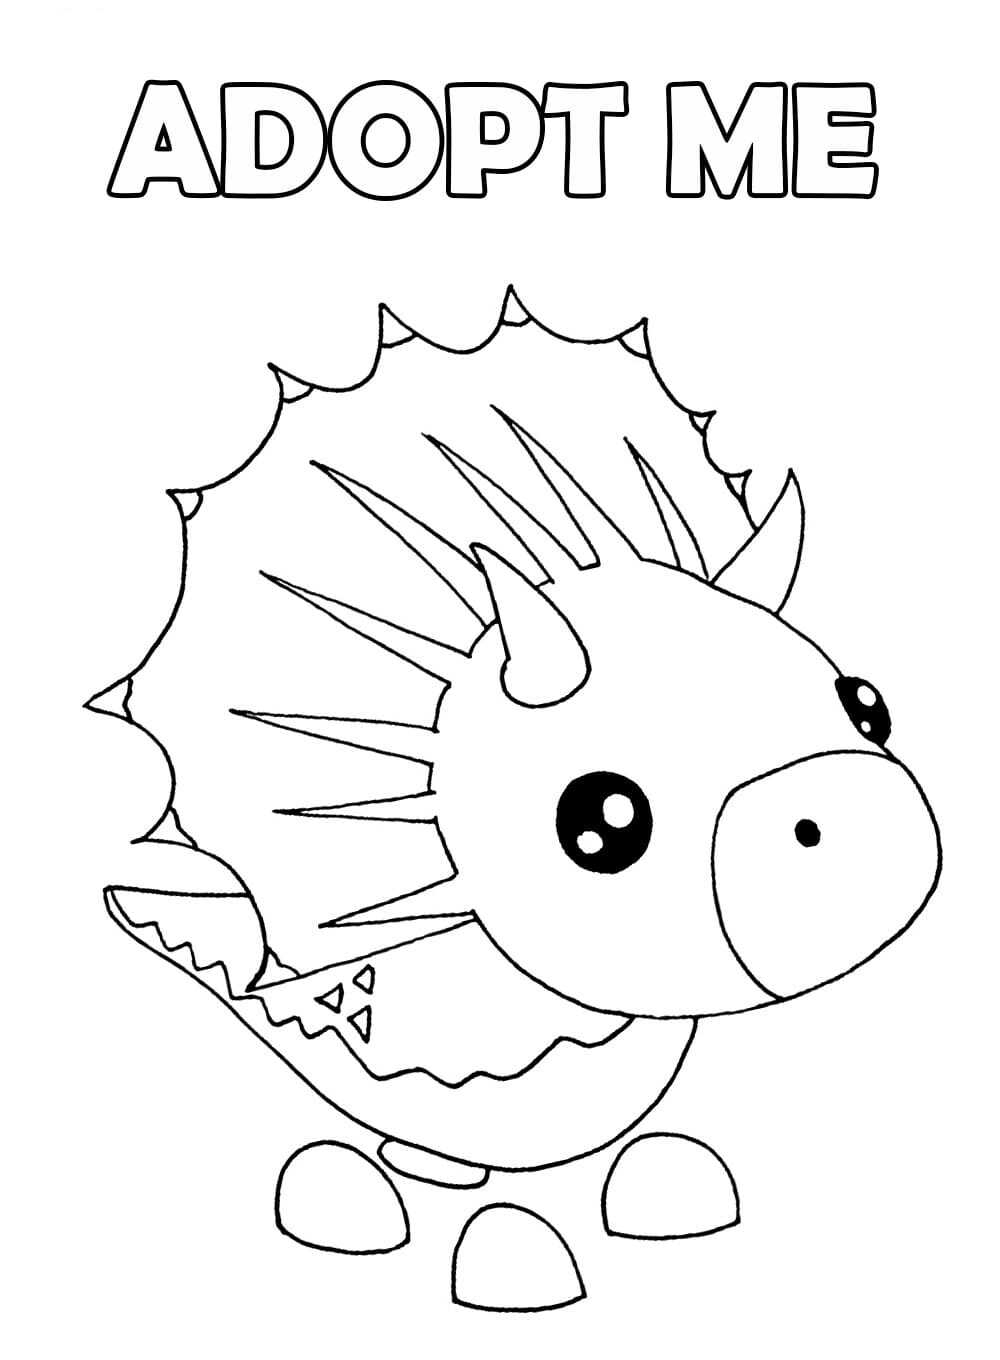 De Triceratops toont een dinosaurushuisdier met drie witte hoorns op zijn kop en snuit in Adopt me-videogames van Adopt me